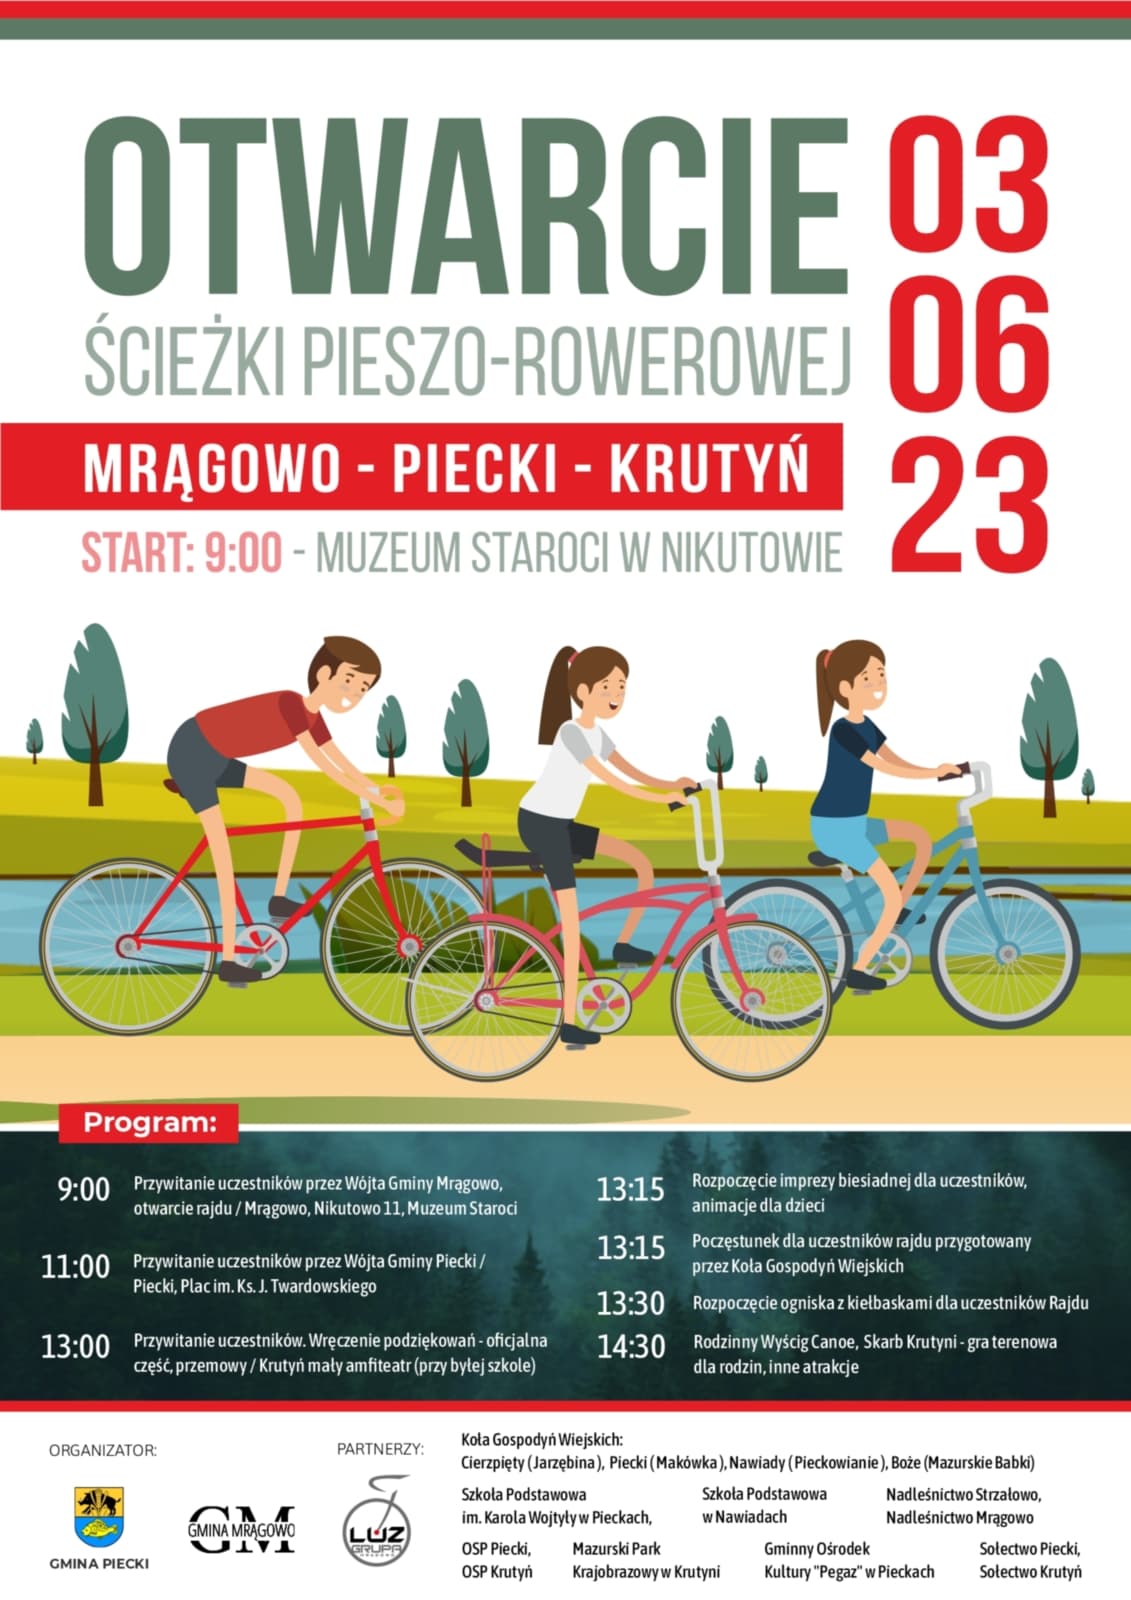 Trasa rowerowa połączyła dwie gminy. Otwarcie ścieżki pieszo – rowerowej Mrągowo-Piecki-Krutyń już 3 czerwca.